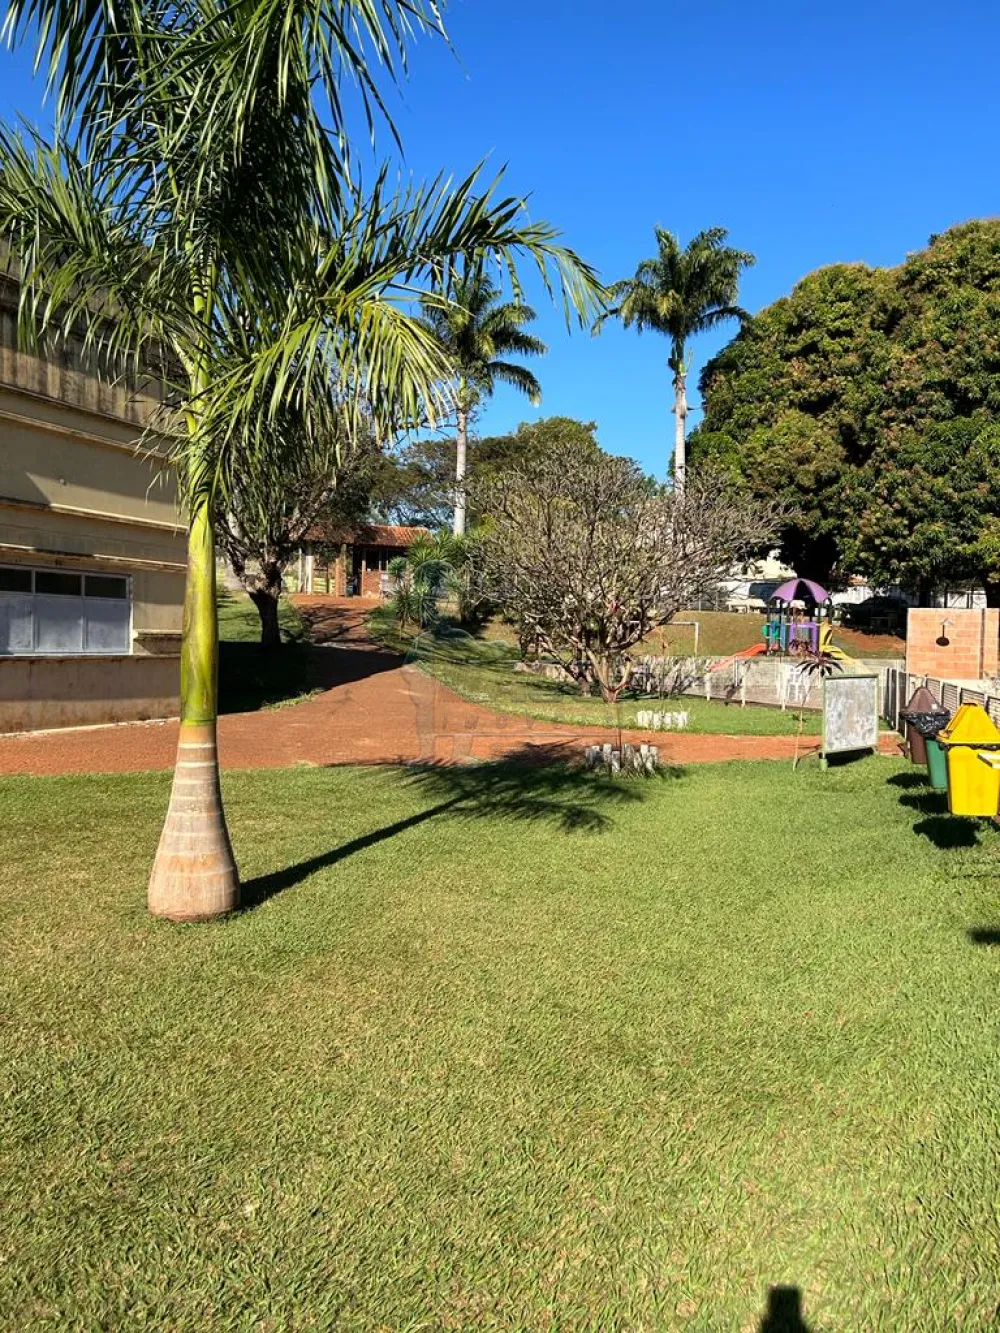 Comprar Apartamento / Padrão em Ribeirão Preto R$ 220.000,00 - Foto 13